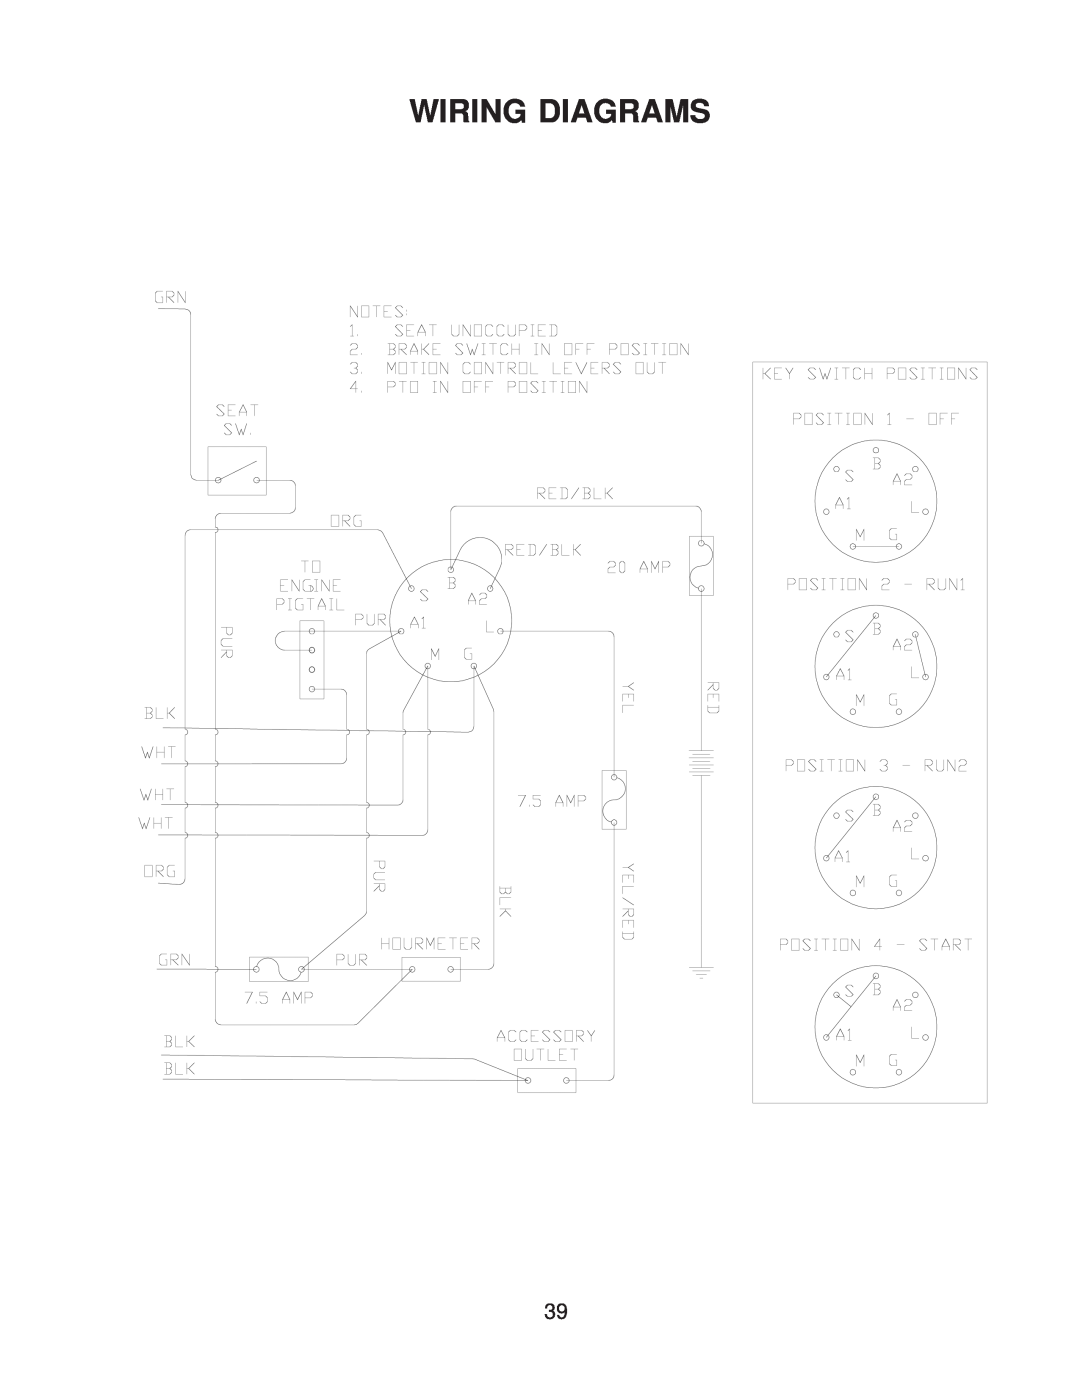 Yazoo/Kees ZMKW4817 manual Wiring Diagrams 